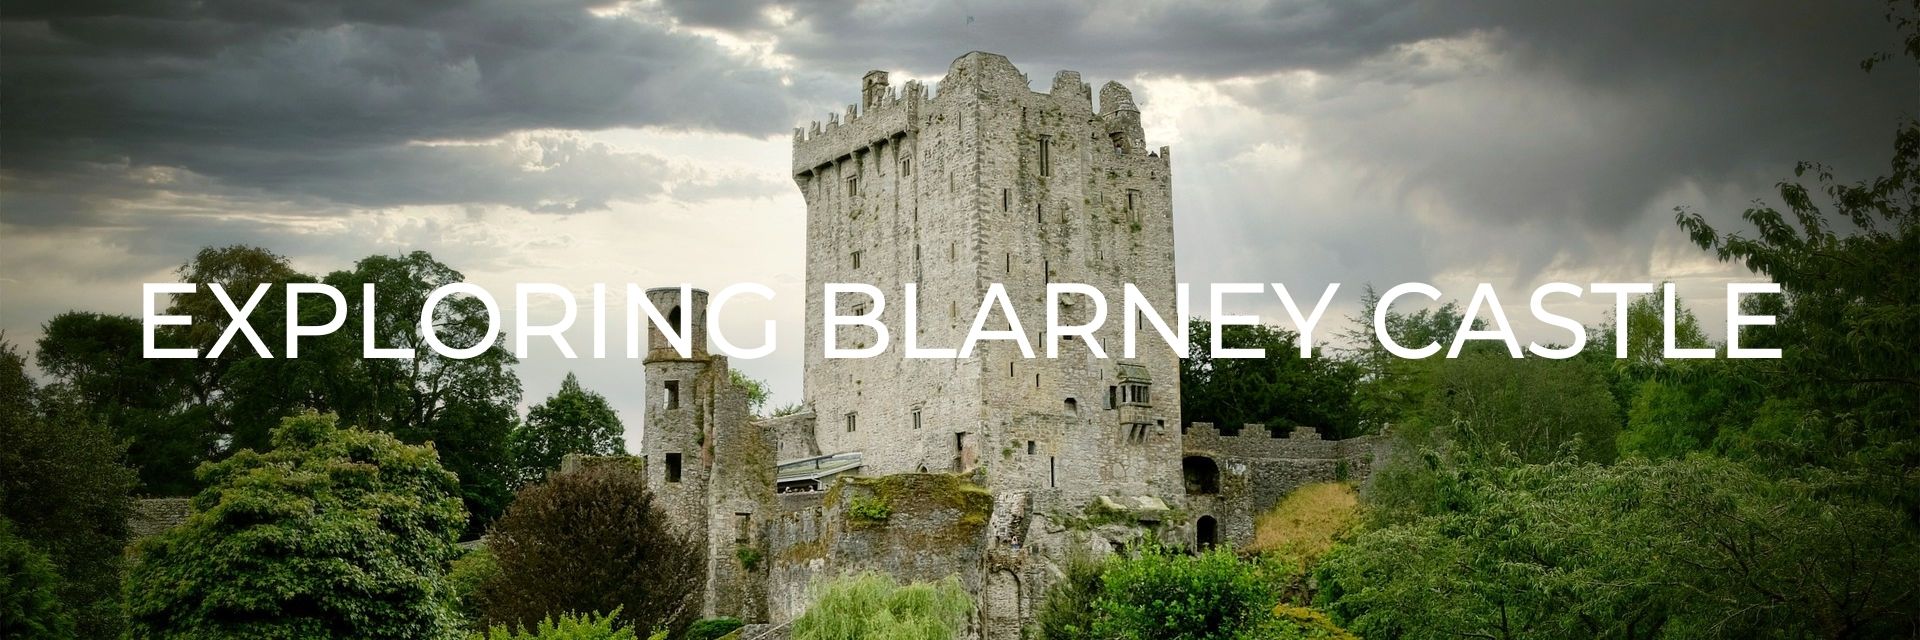 Exploring Blarney Castle Desktop Header